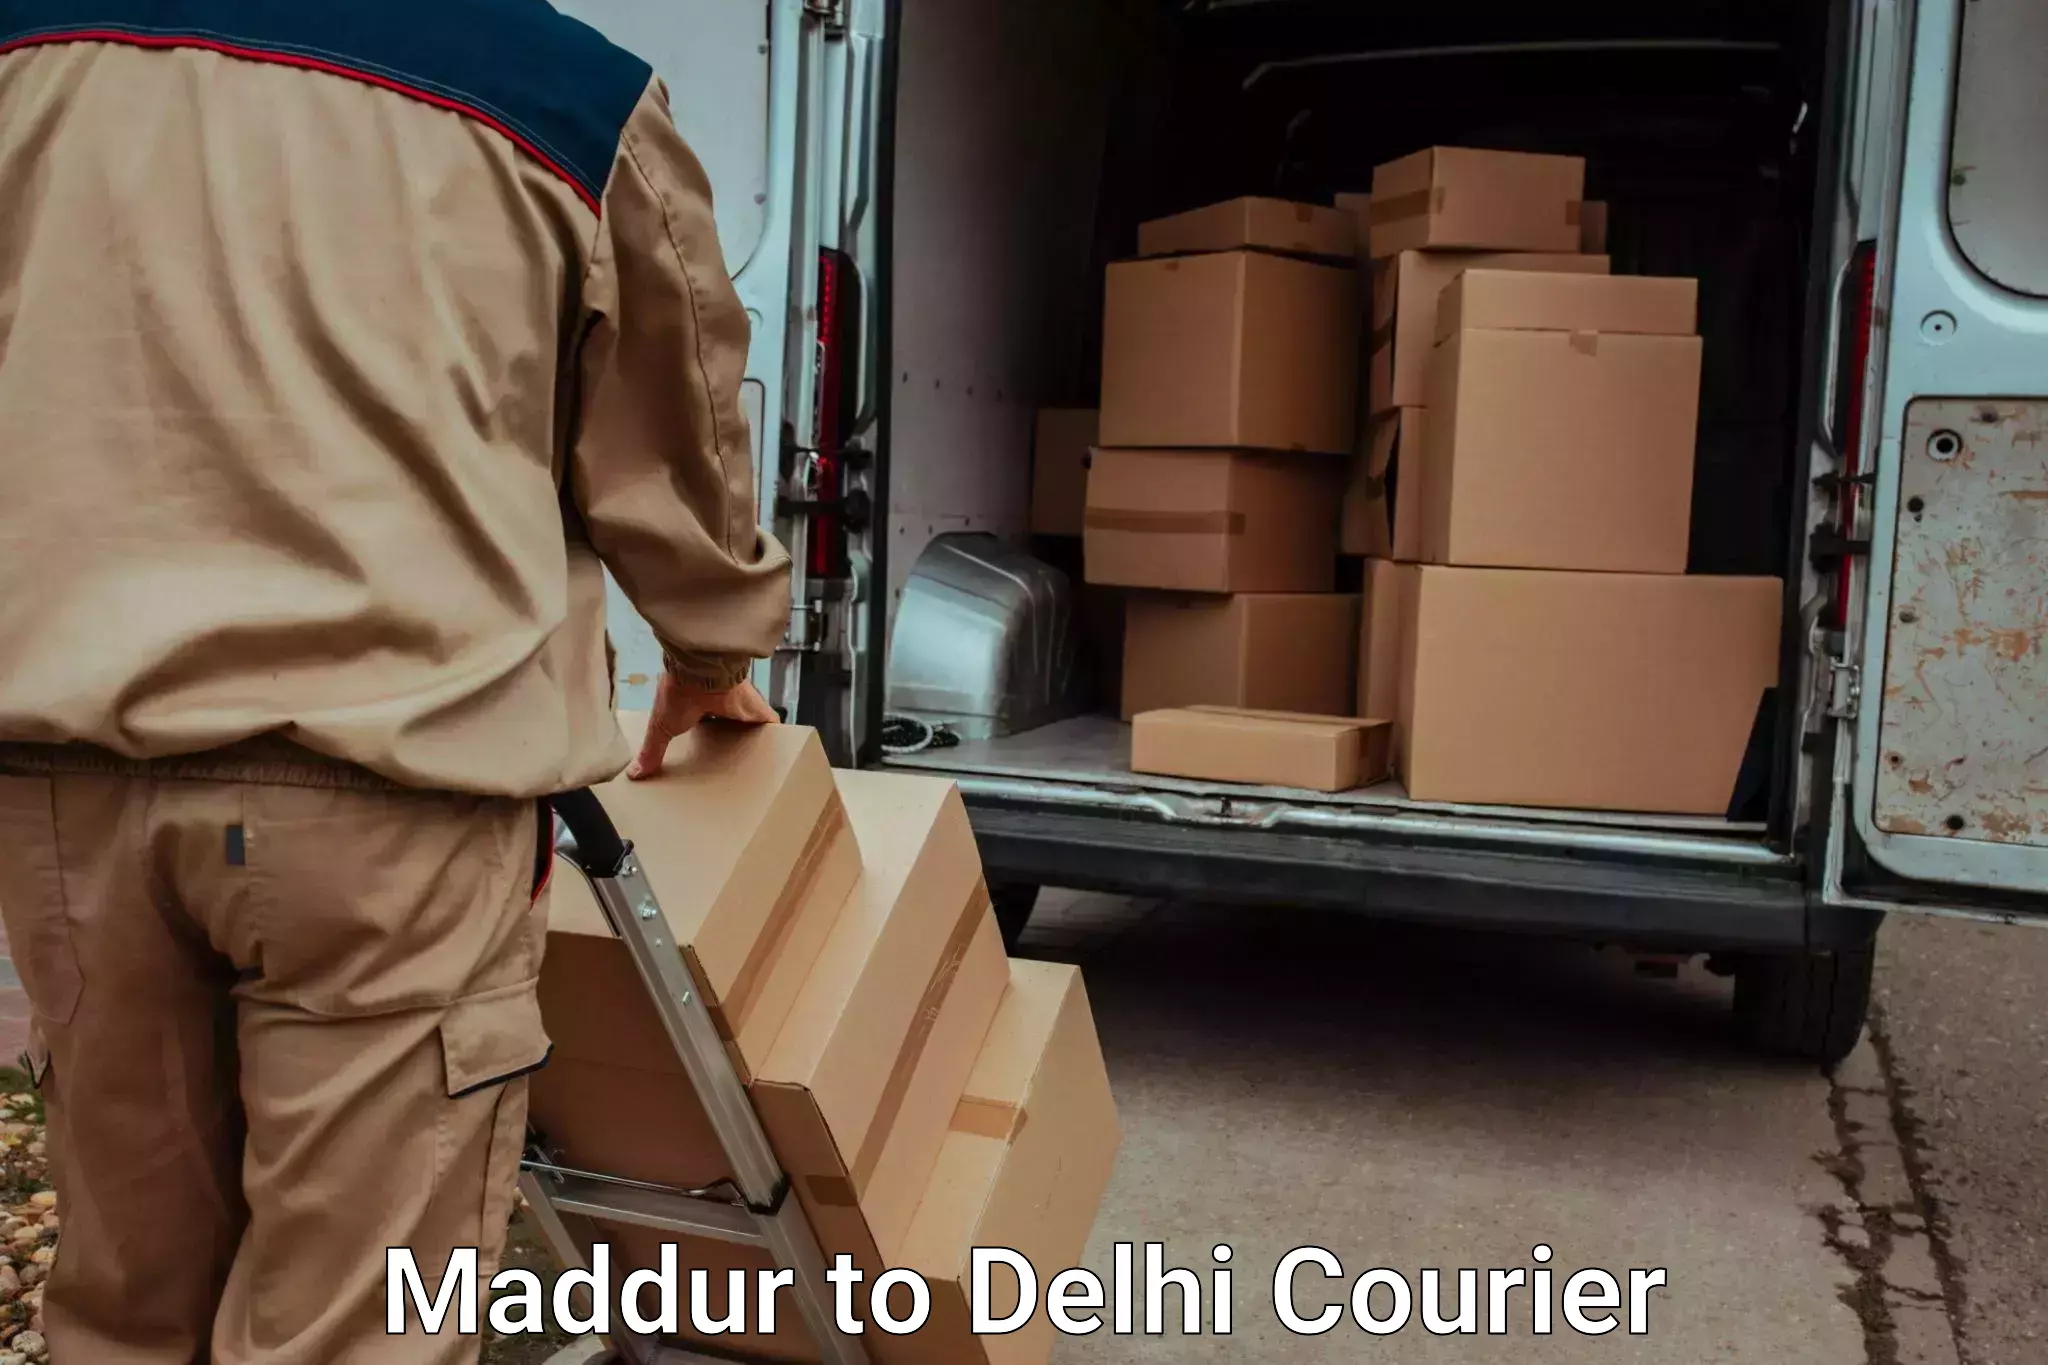 Furniture transport professionals Maddur to Sarojini Nagar